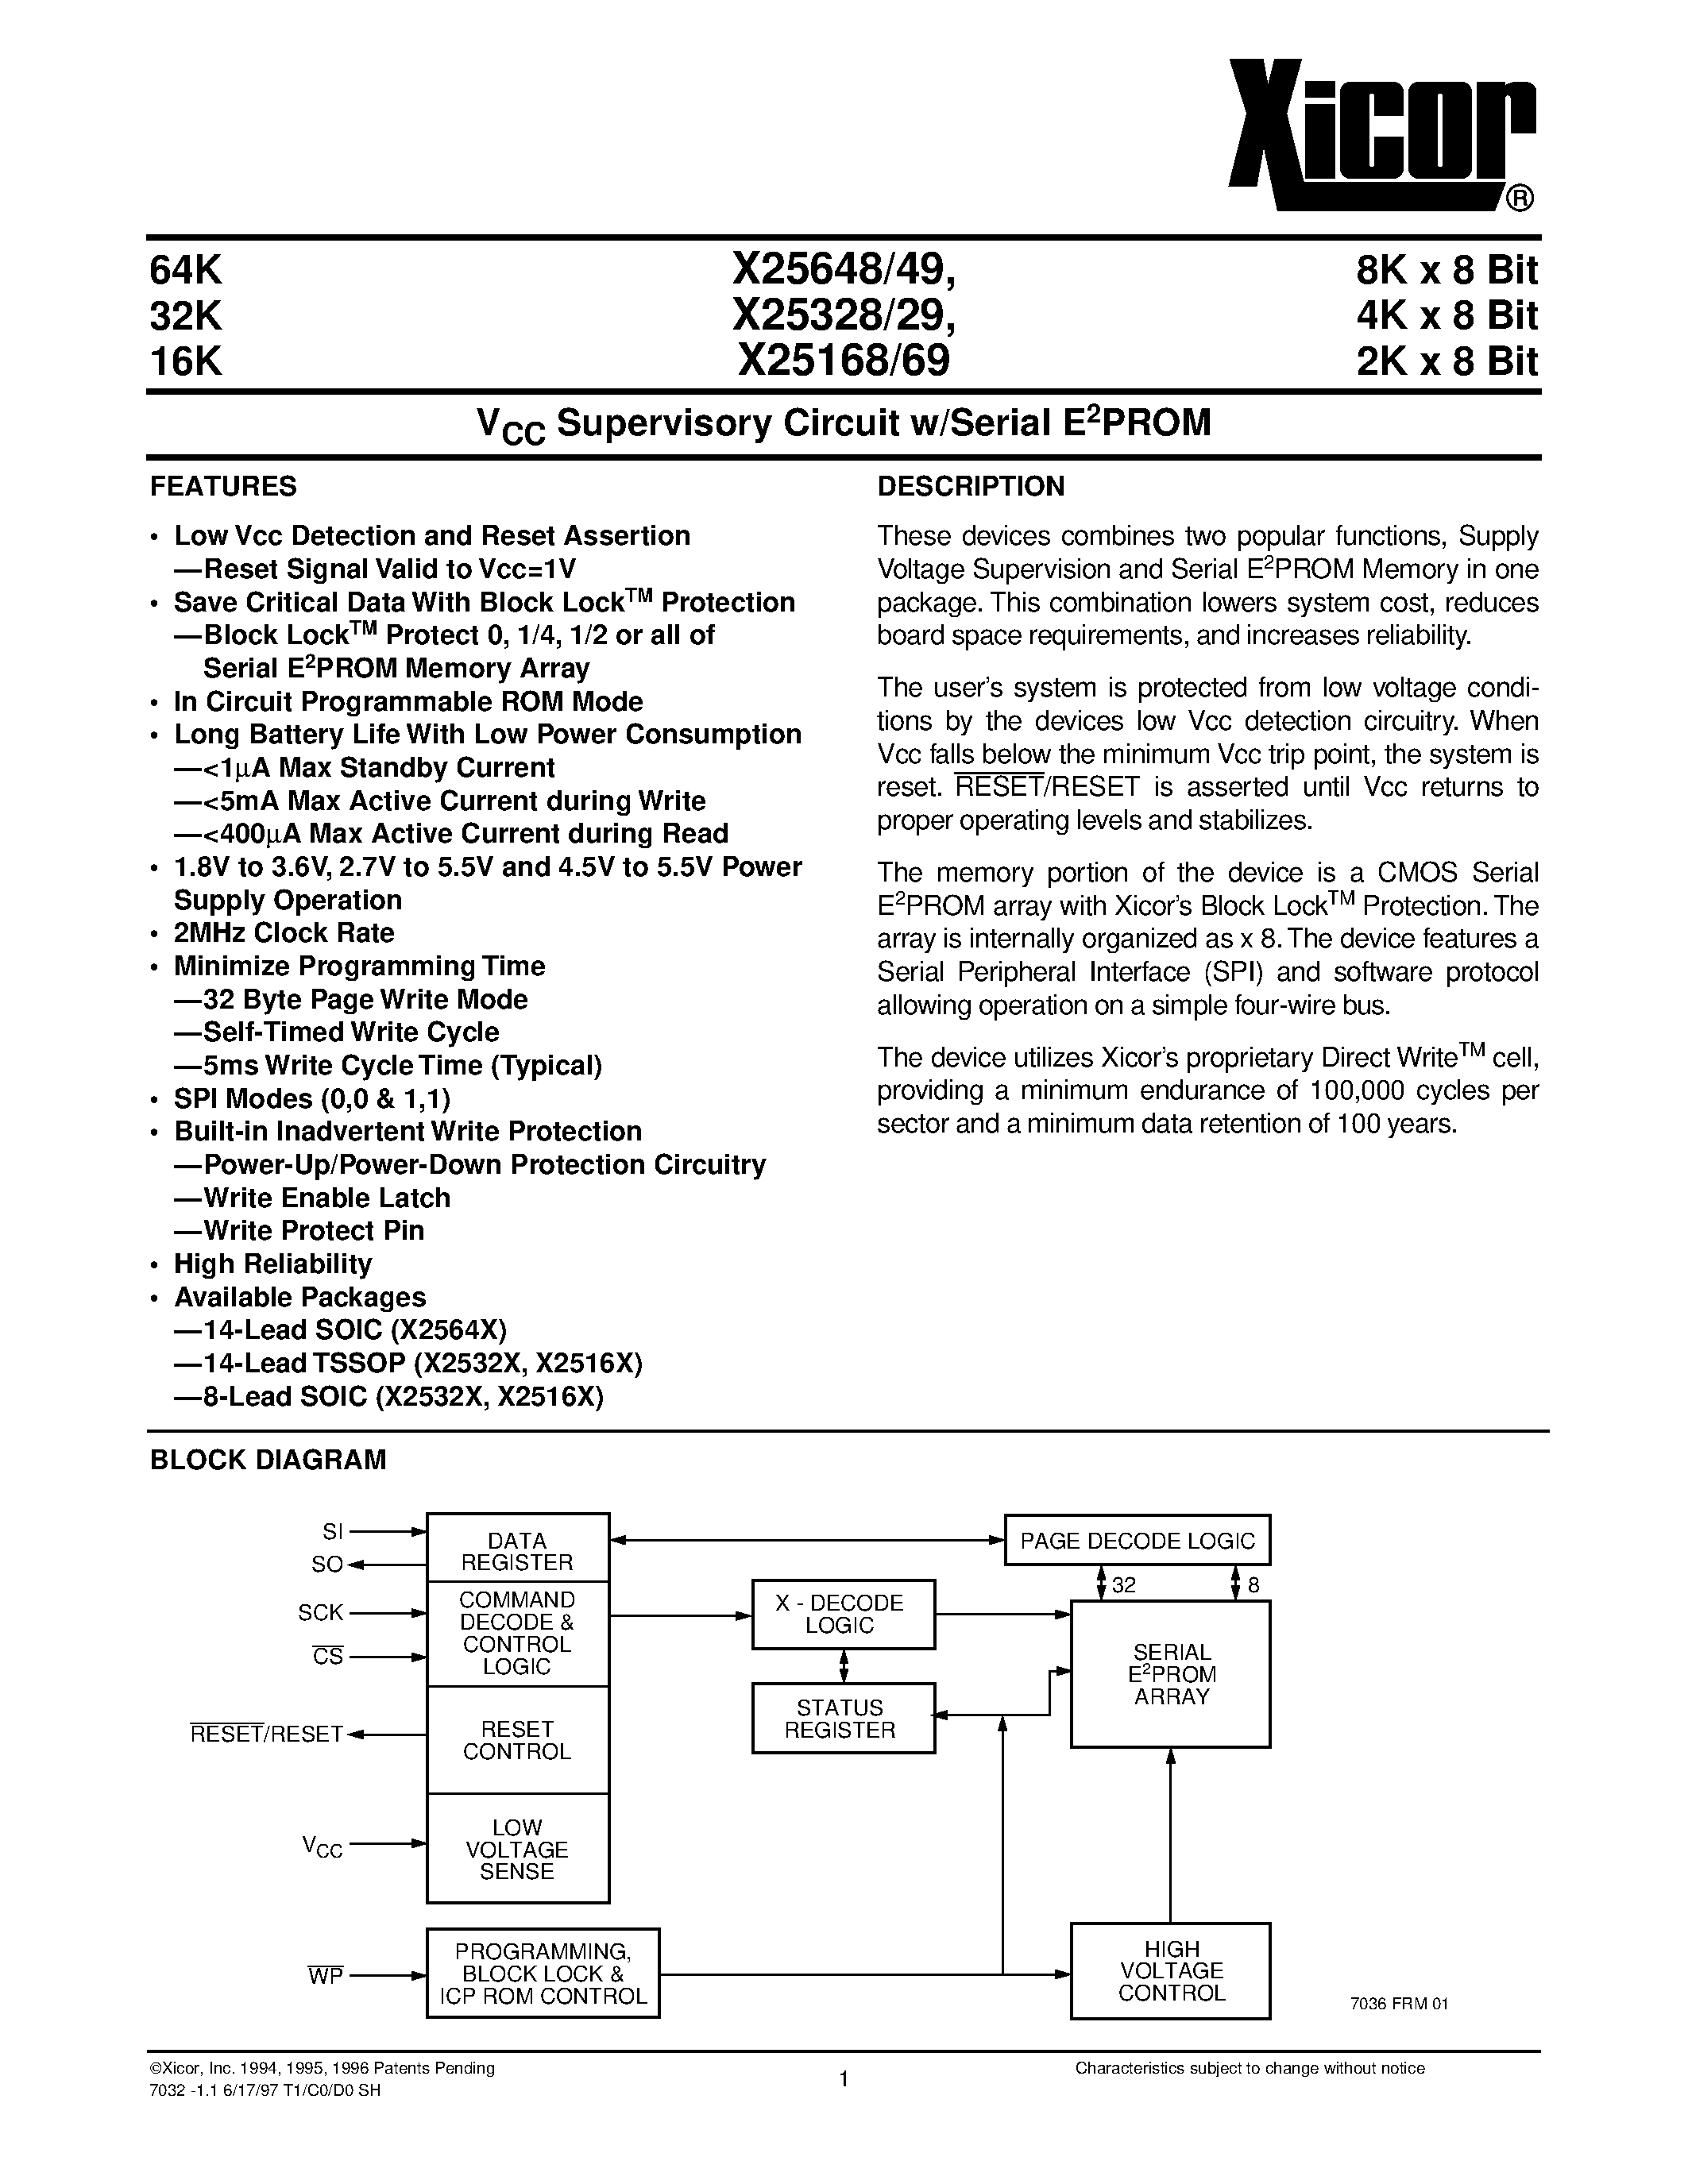 Даташит X25649S8-1.8 - V CC Supervisory Circuit w/Serial E 2 PROM страница 1